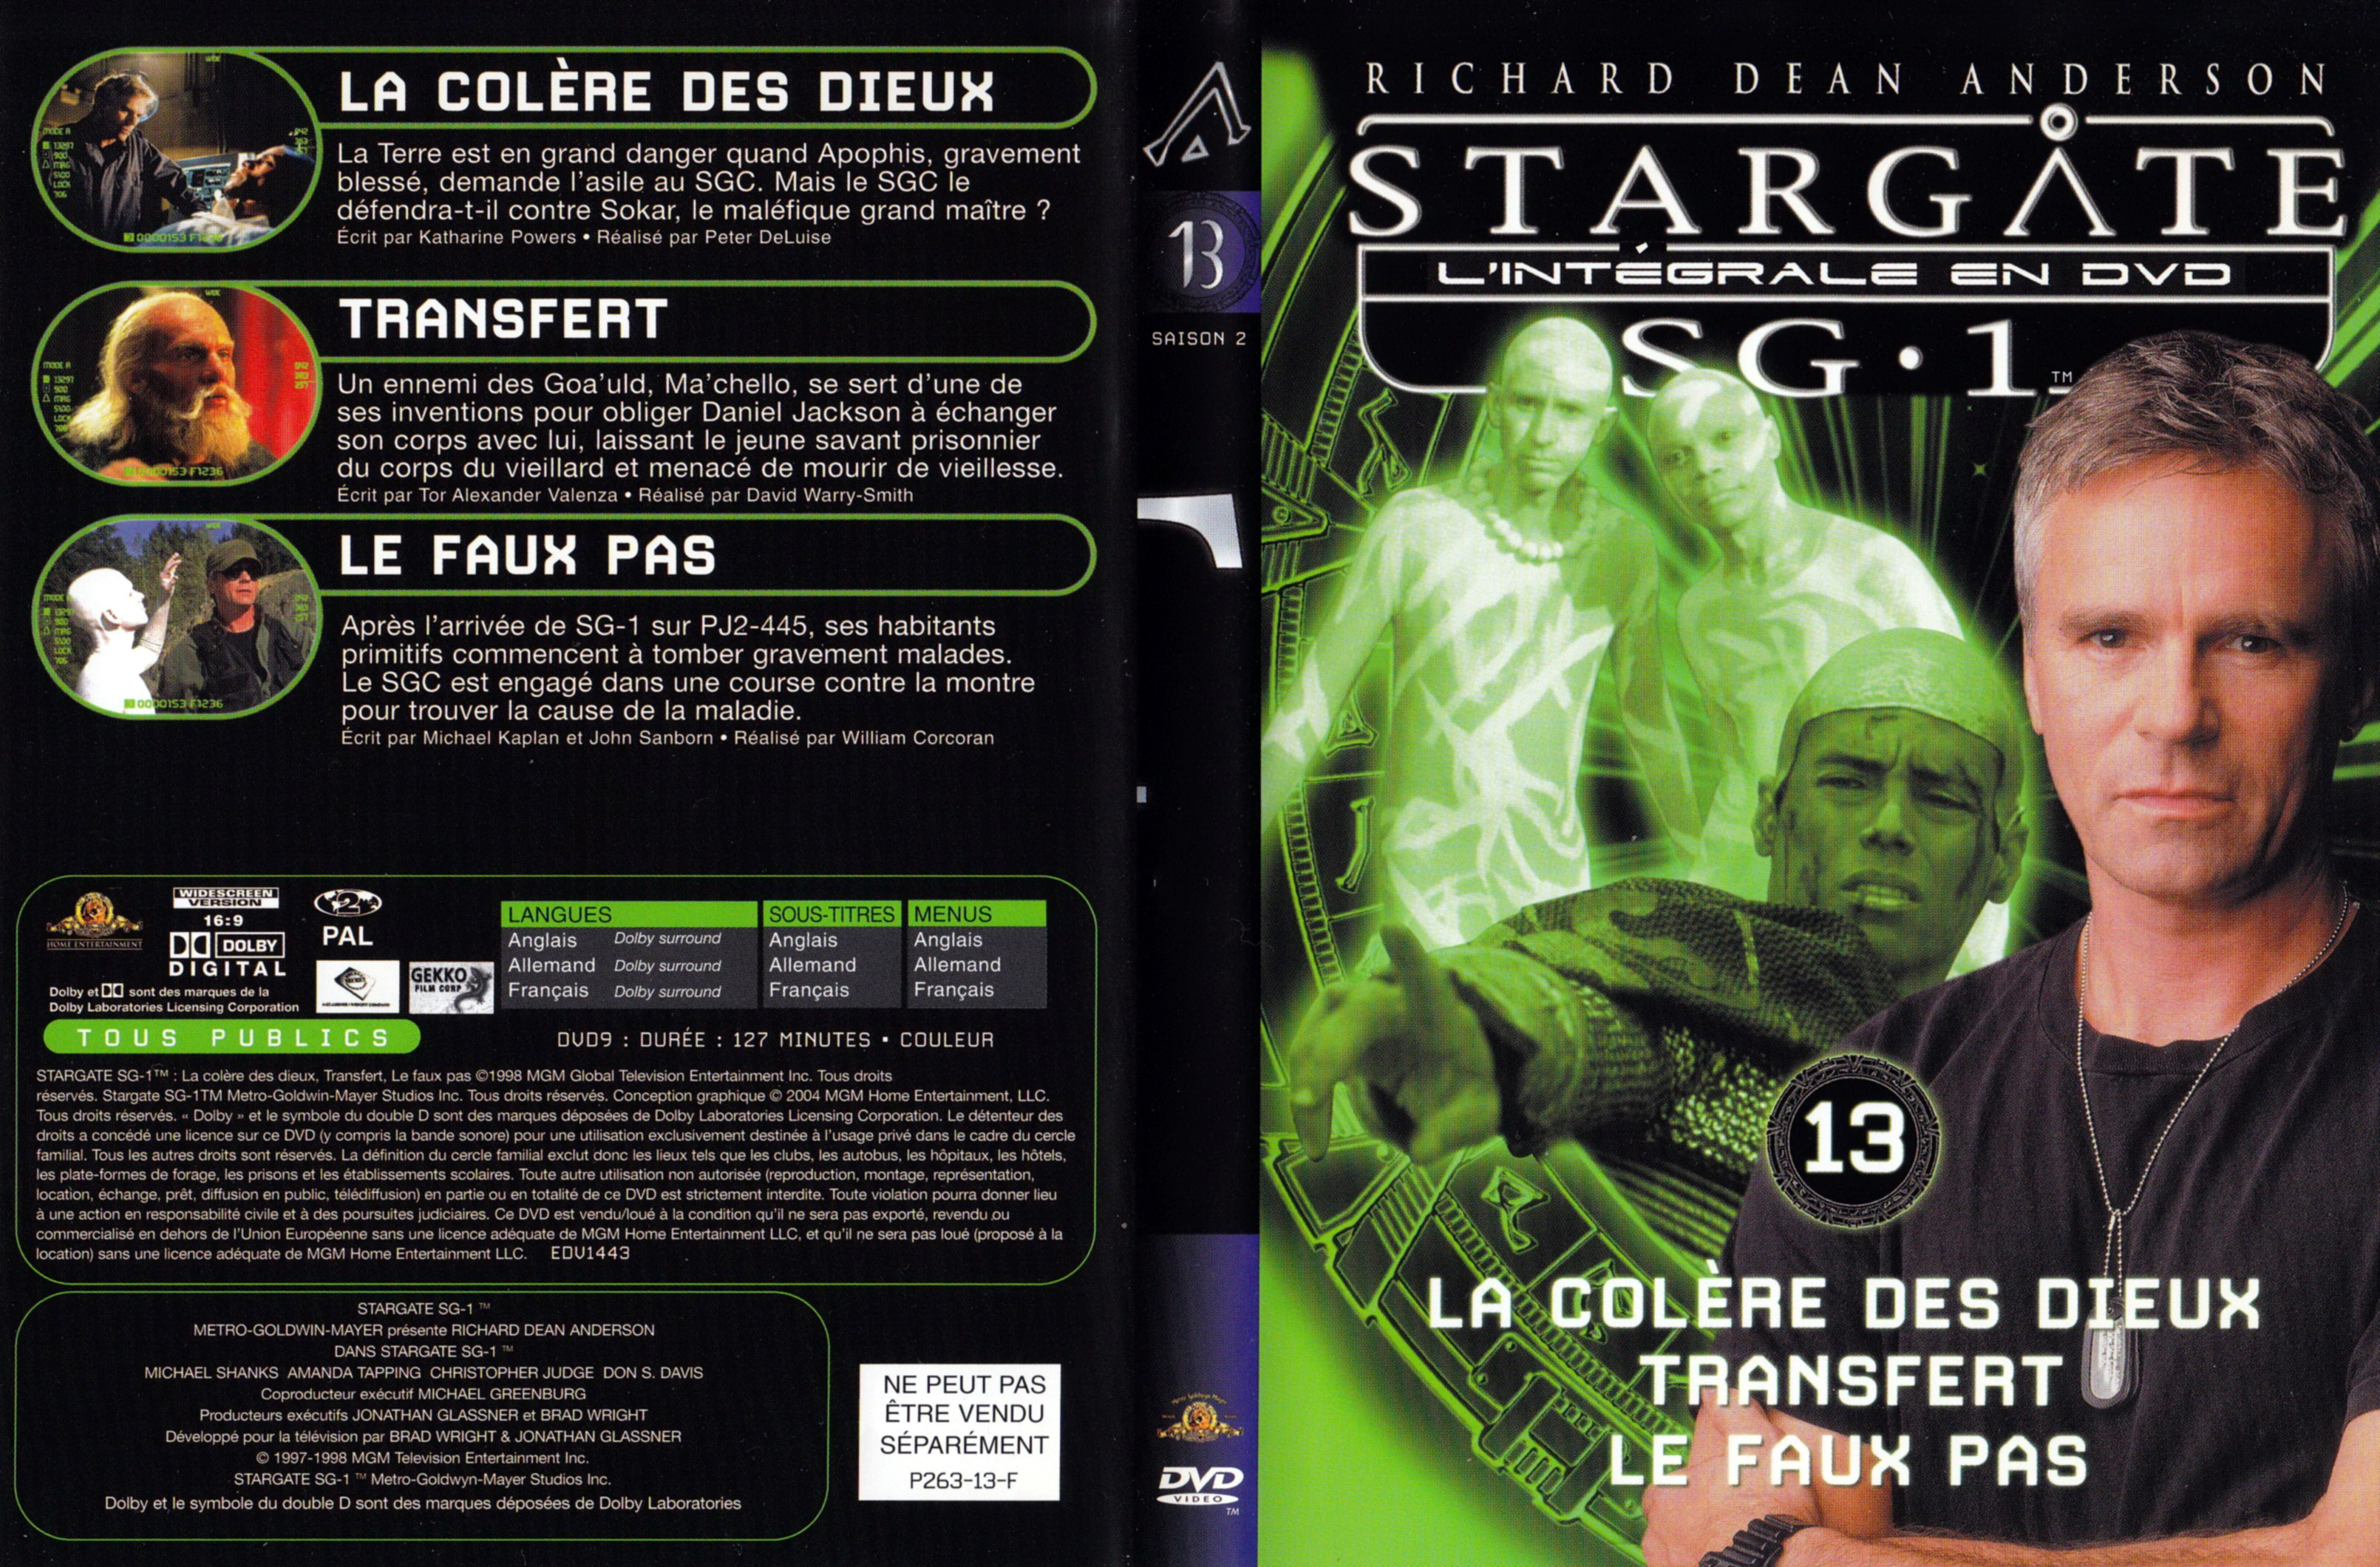 Jaquette DVD Stargate SG1 Intgrale Saison 2 vol 13